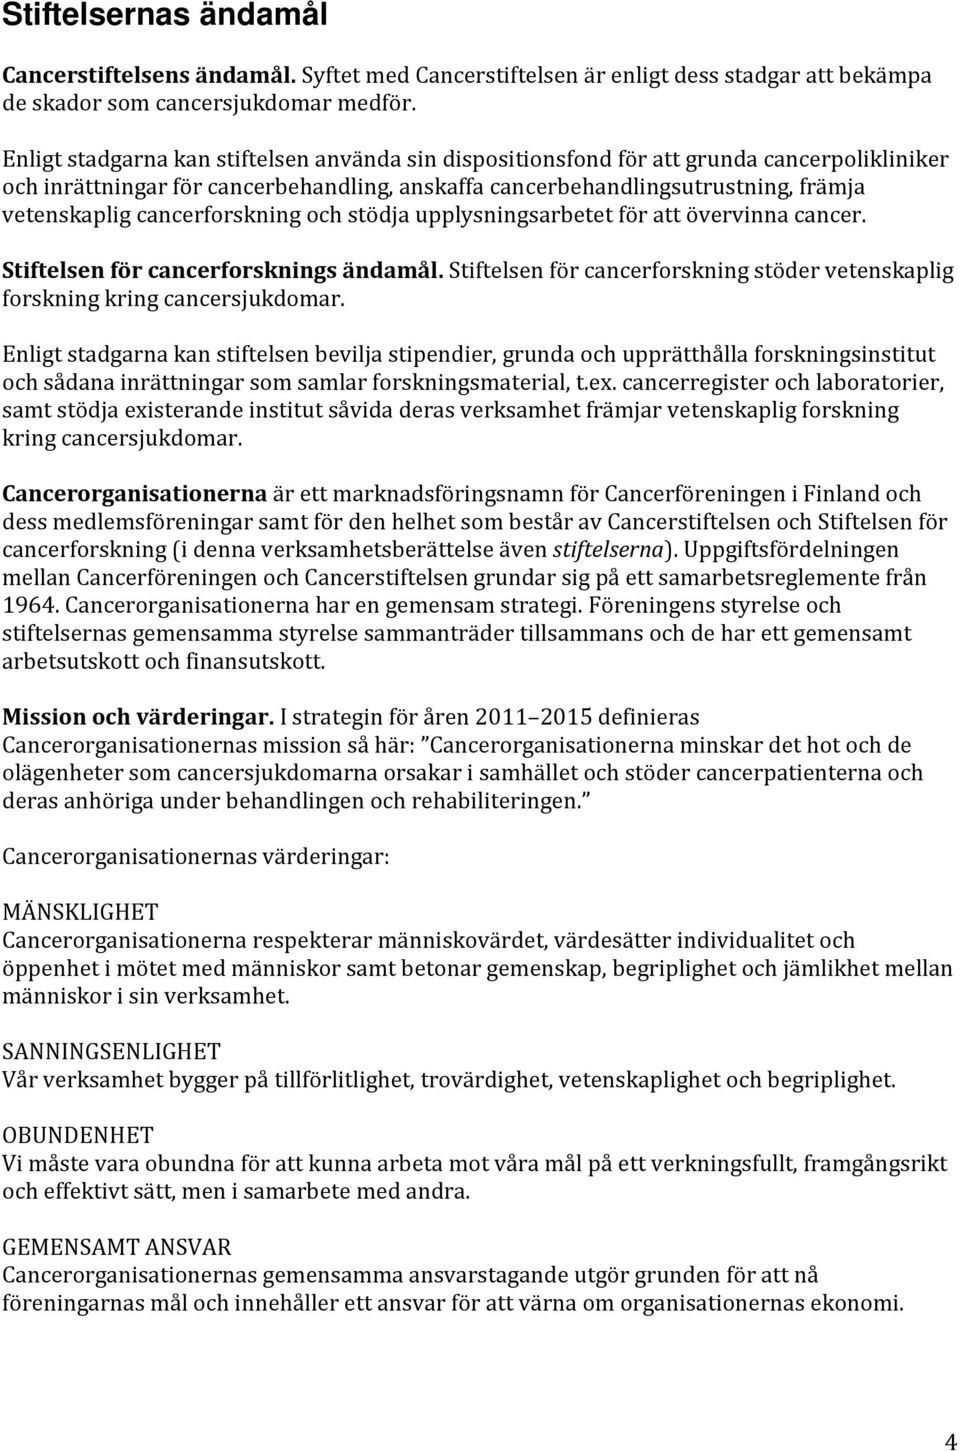 Cancerstiftelsen och Stiftelsen för cancerforskning - PDF Gratis ...